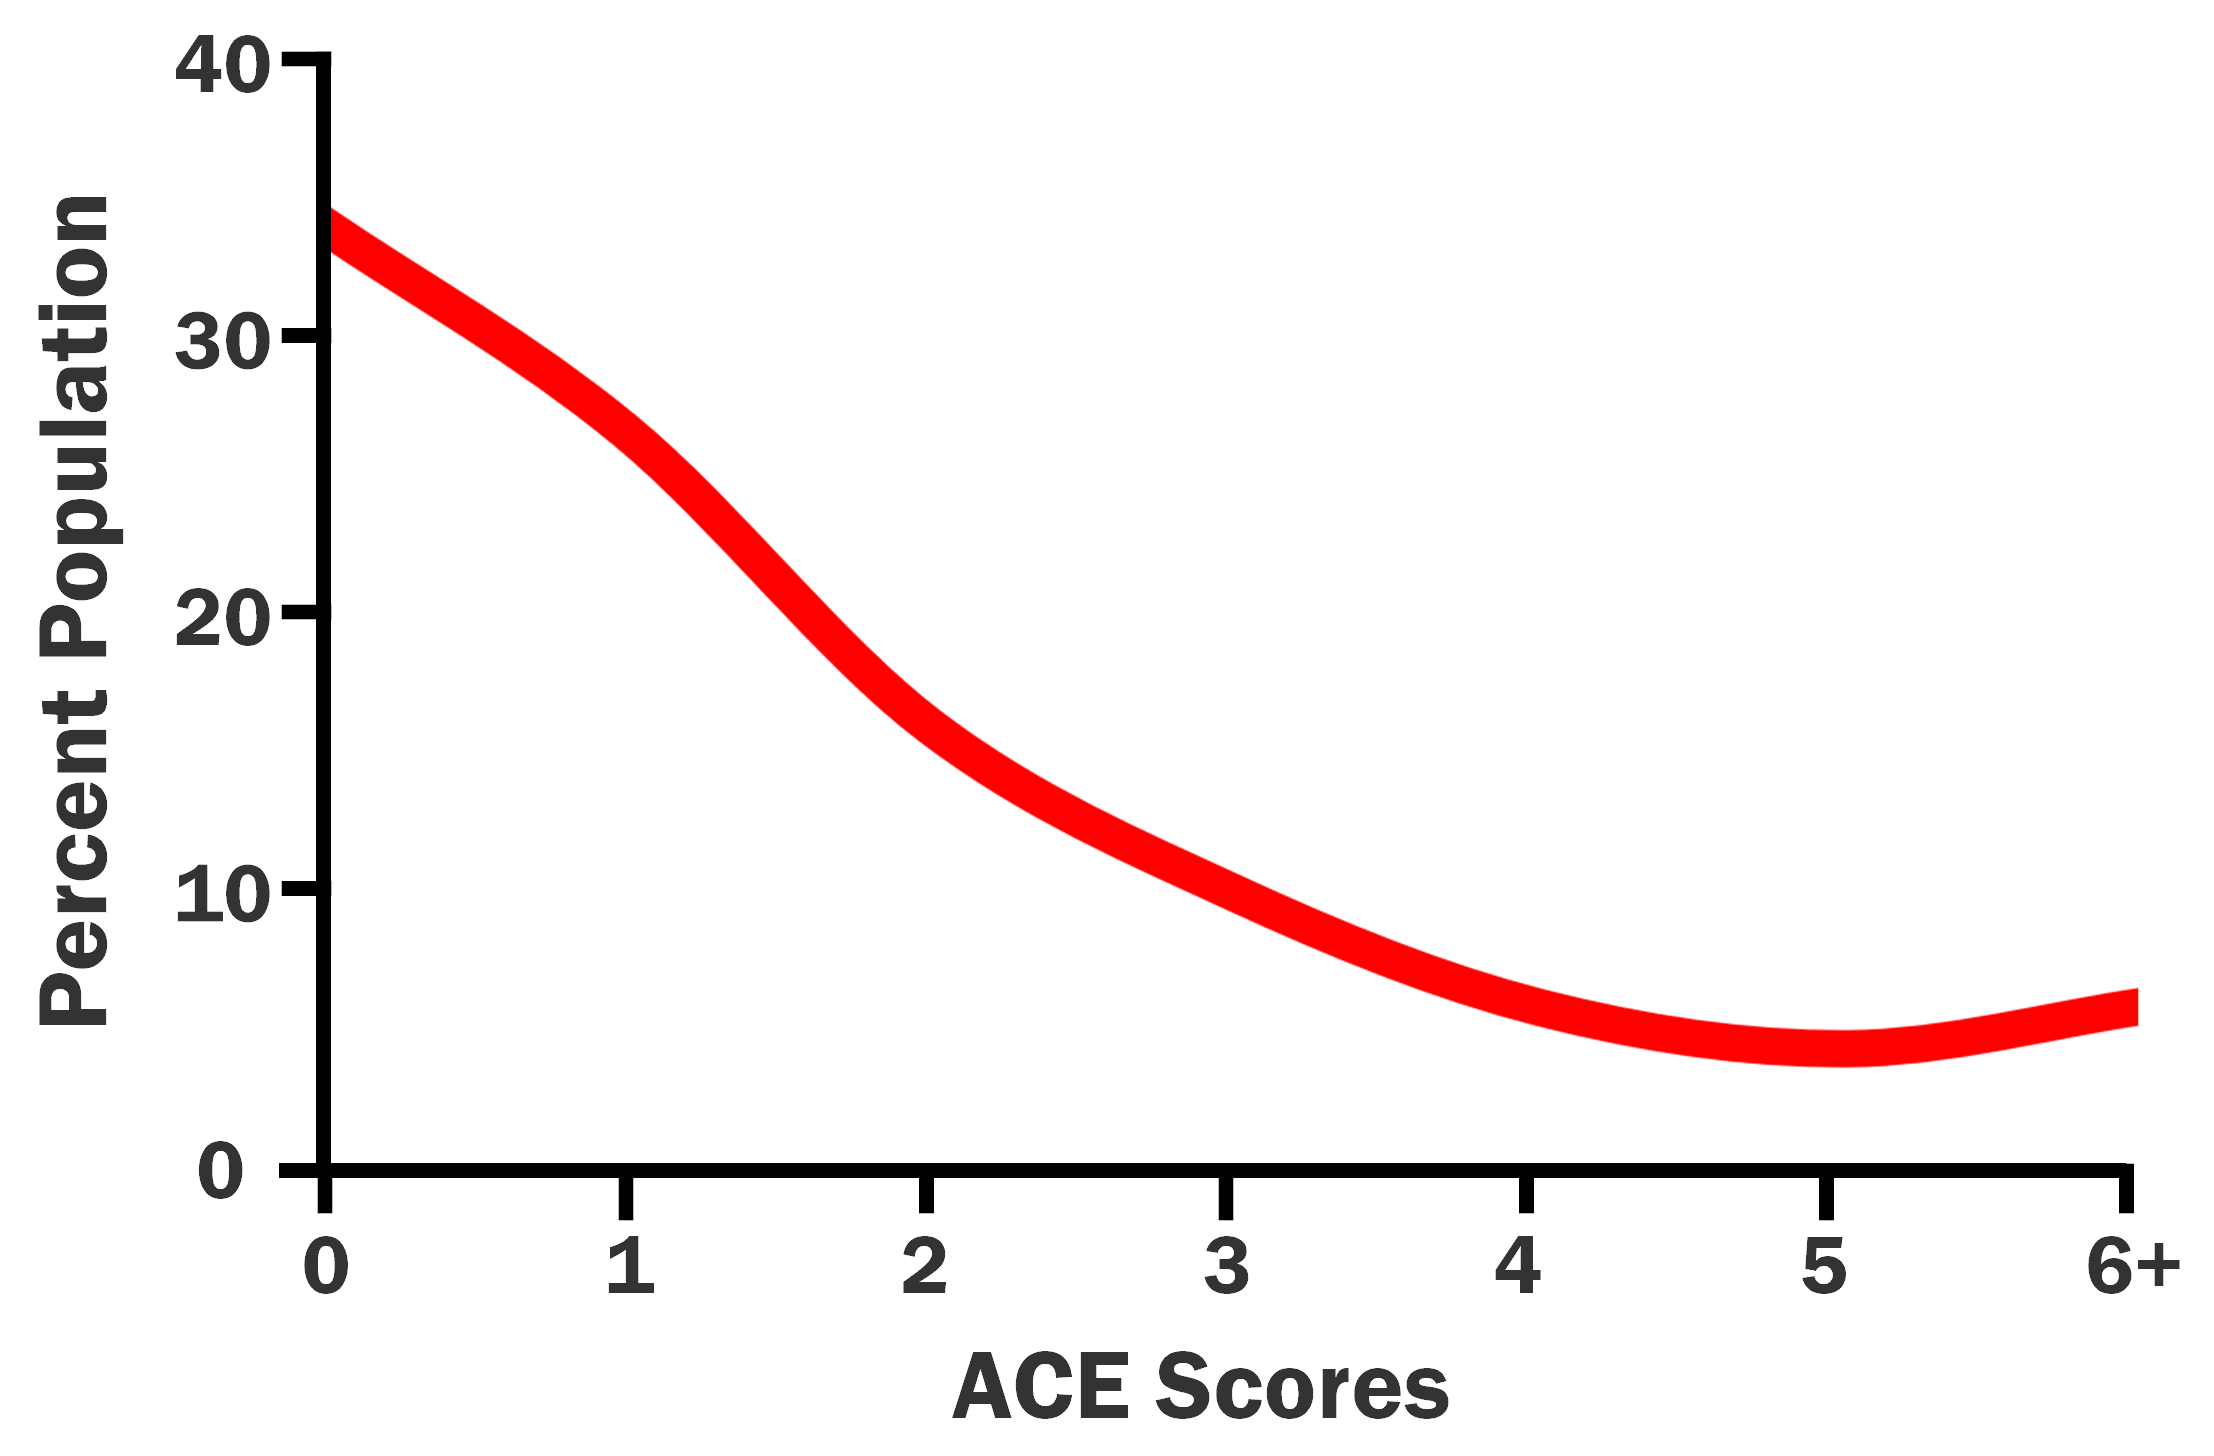 ACE Score vs Percent Population Gender Graph